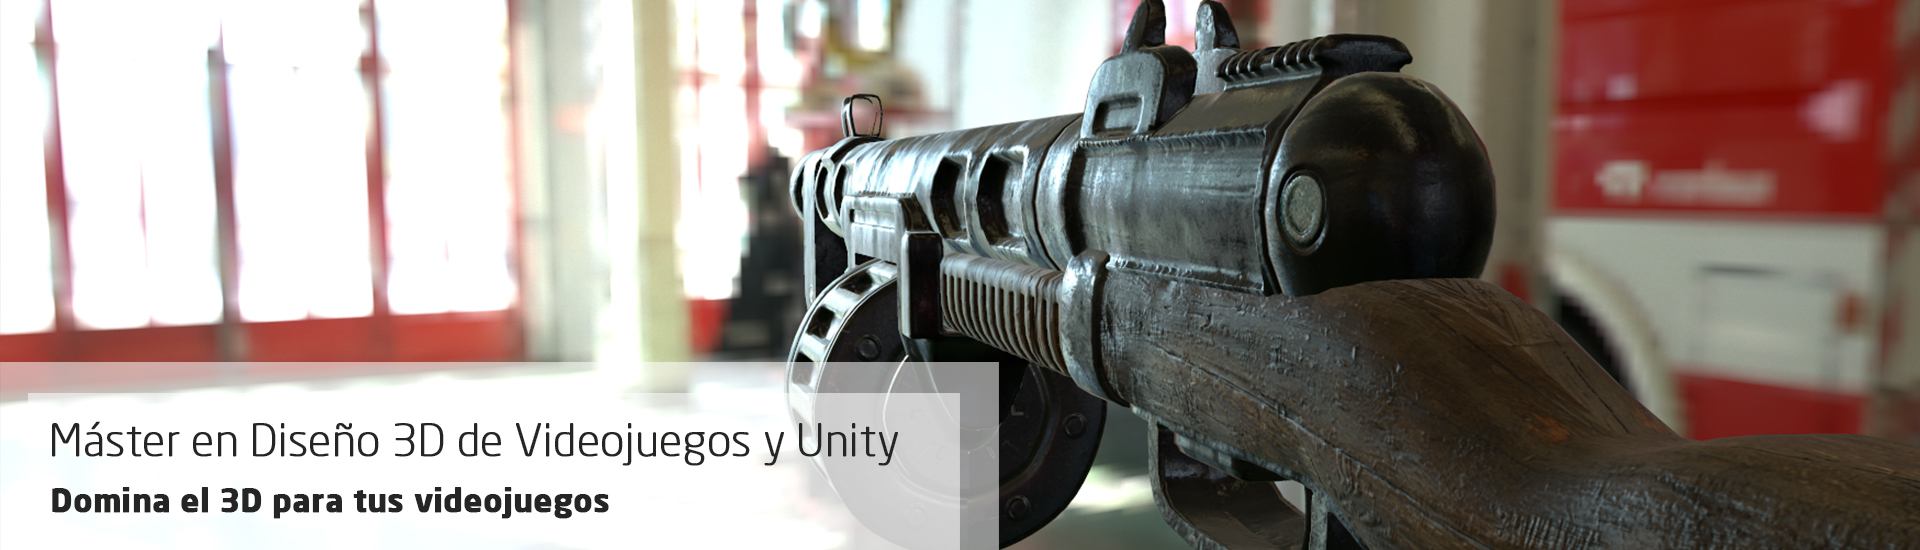 Máster en Diseño de Videojuegos con Unity. Domina el 3D para la creación de videojuegos.